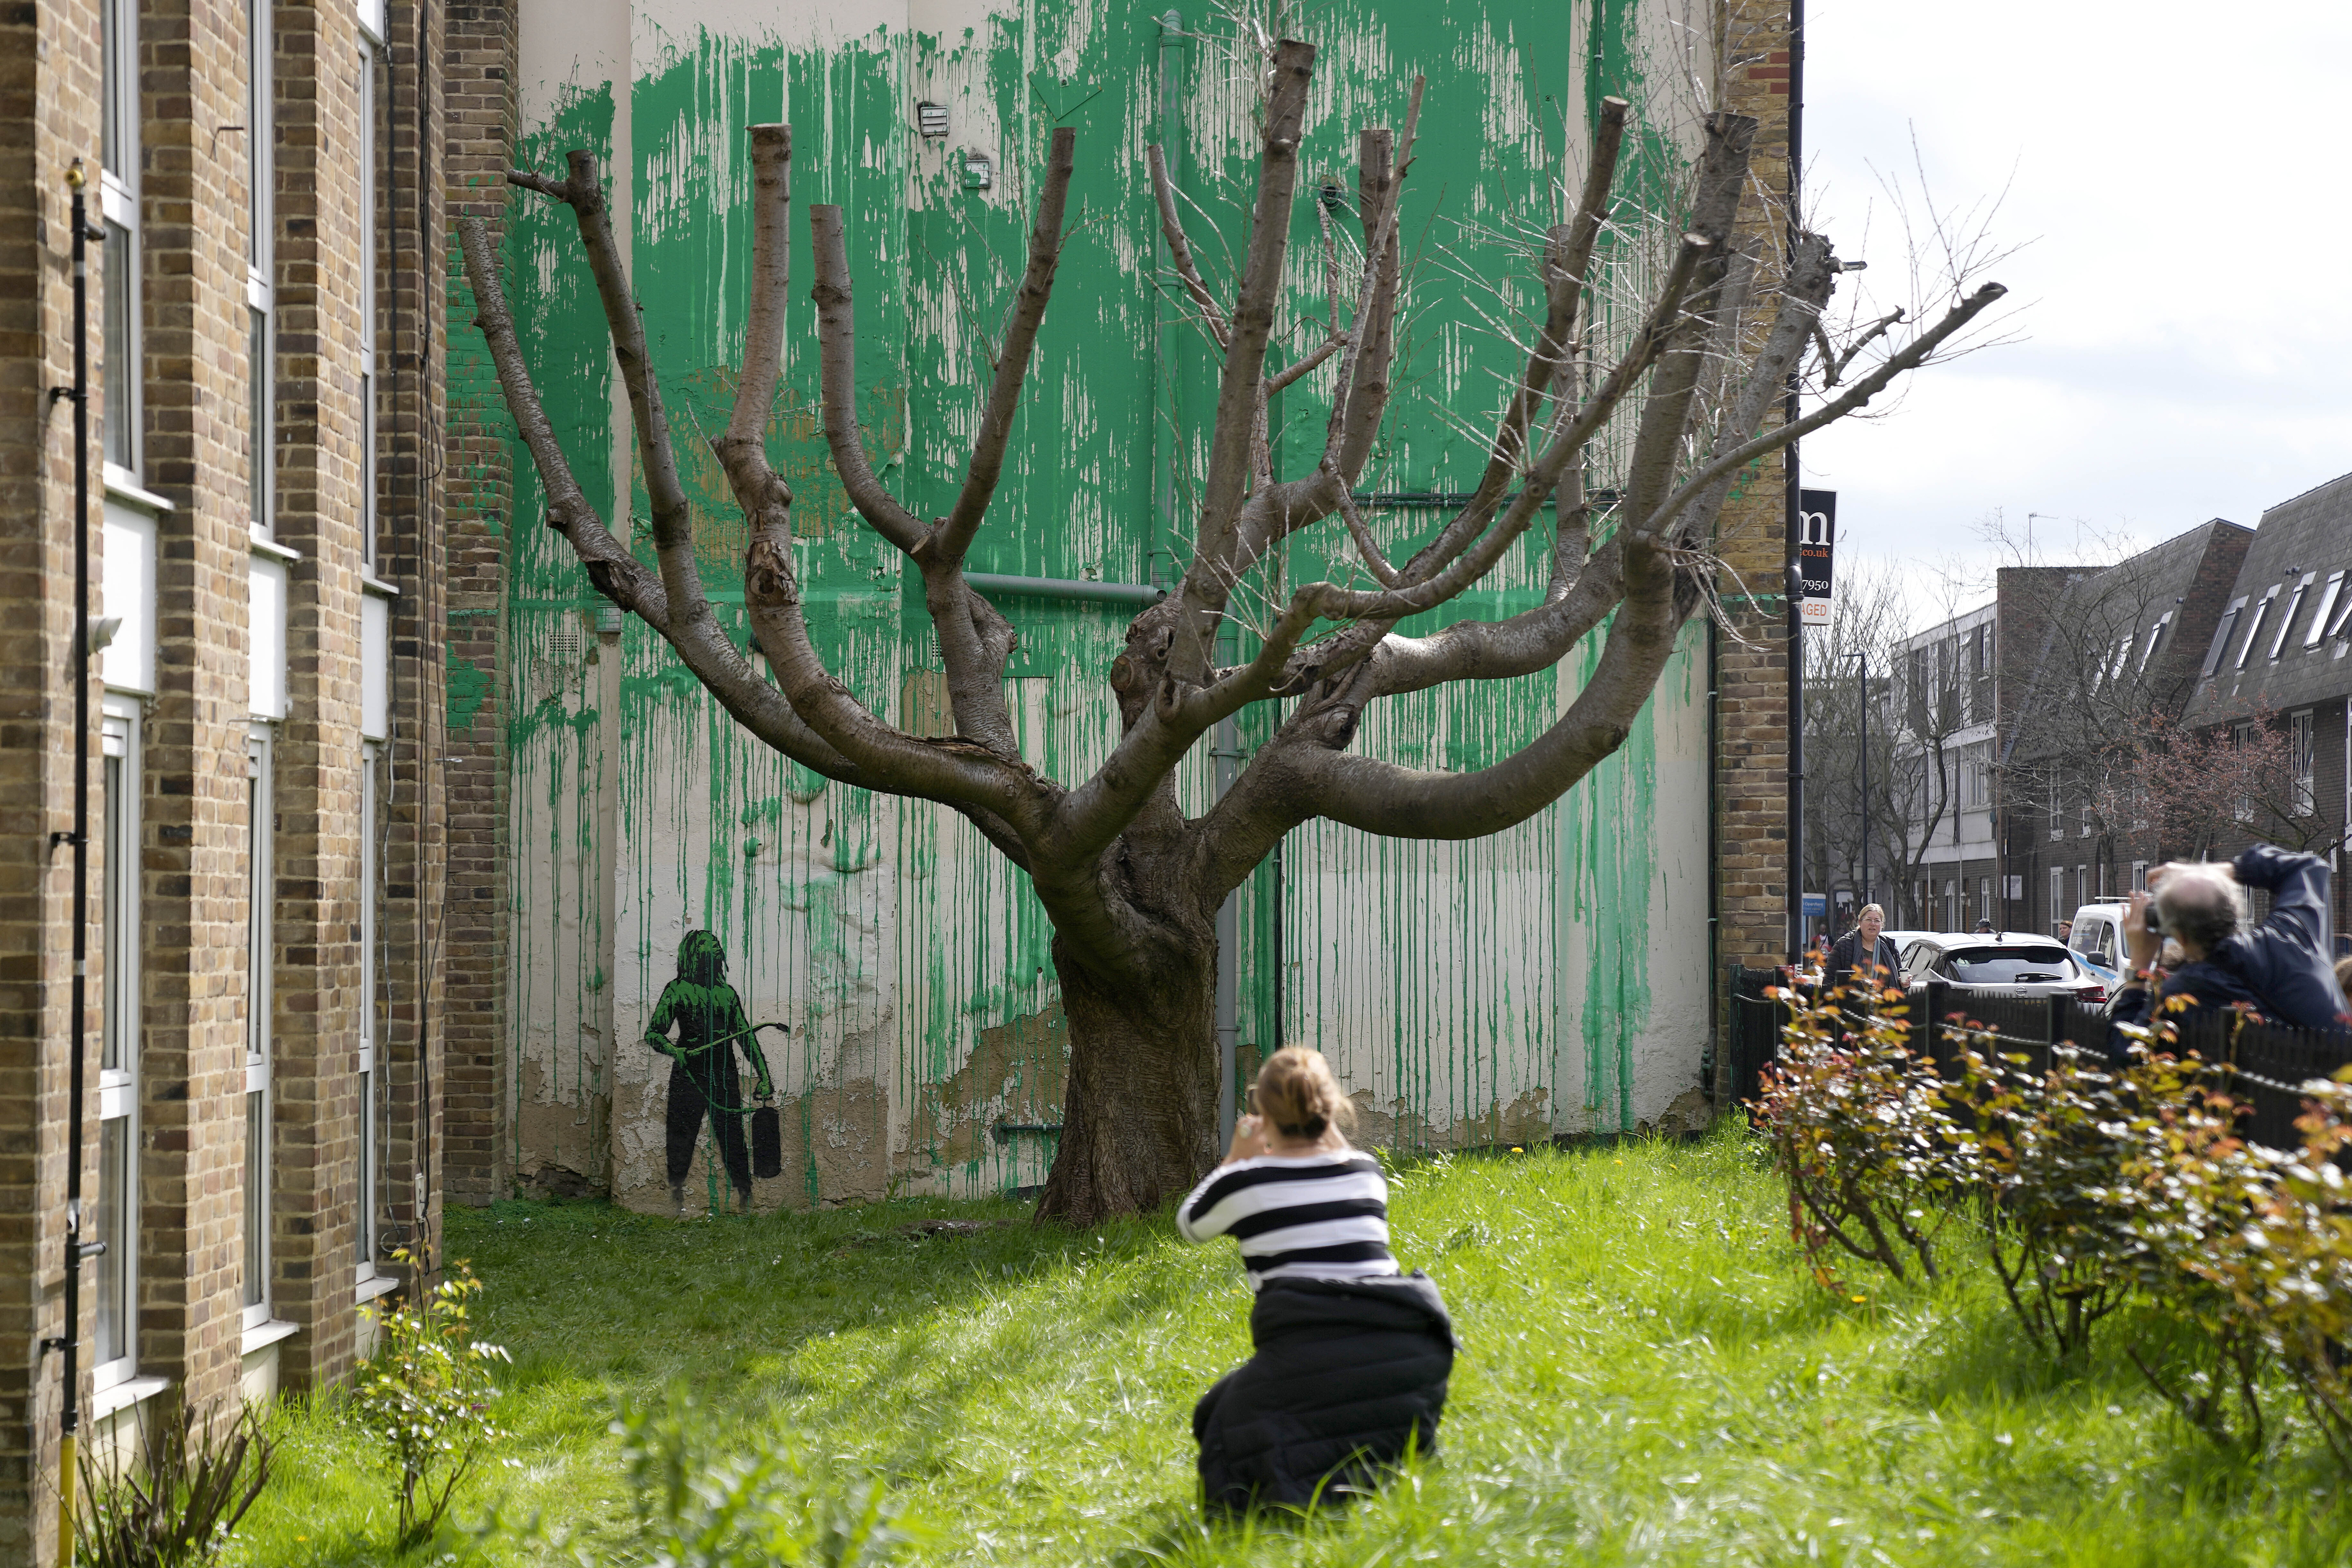 영국 런던 북부 핀스베리 공원 인근에 있는 한 건물에 ‘얼굴 없는 화가’ 뱅크시가 그린 벽화가 등장했다. 사진은 한 여성이 가지만 남은 나무의 초록색 잎을 표현한 듯한 뱅크시 벽화 앞에서 사진을 찍는 모습. AP 뉴시스